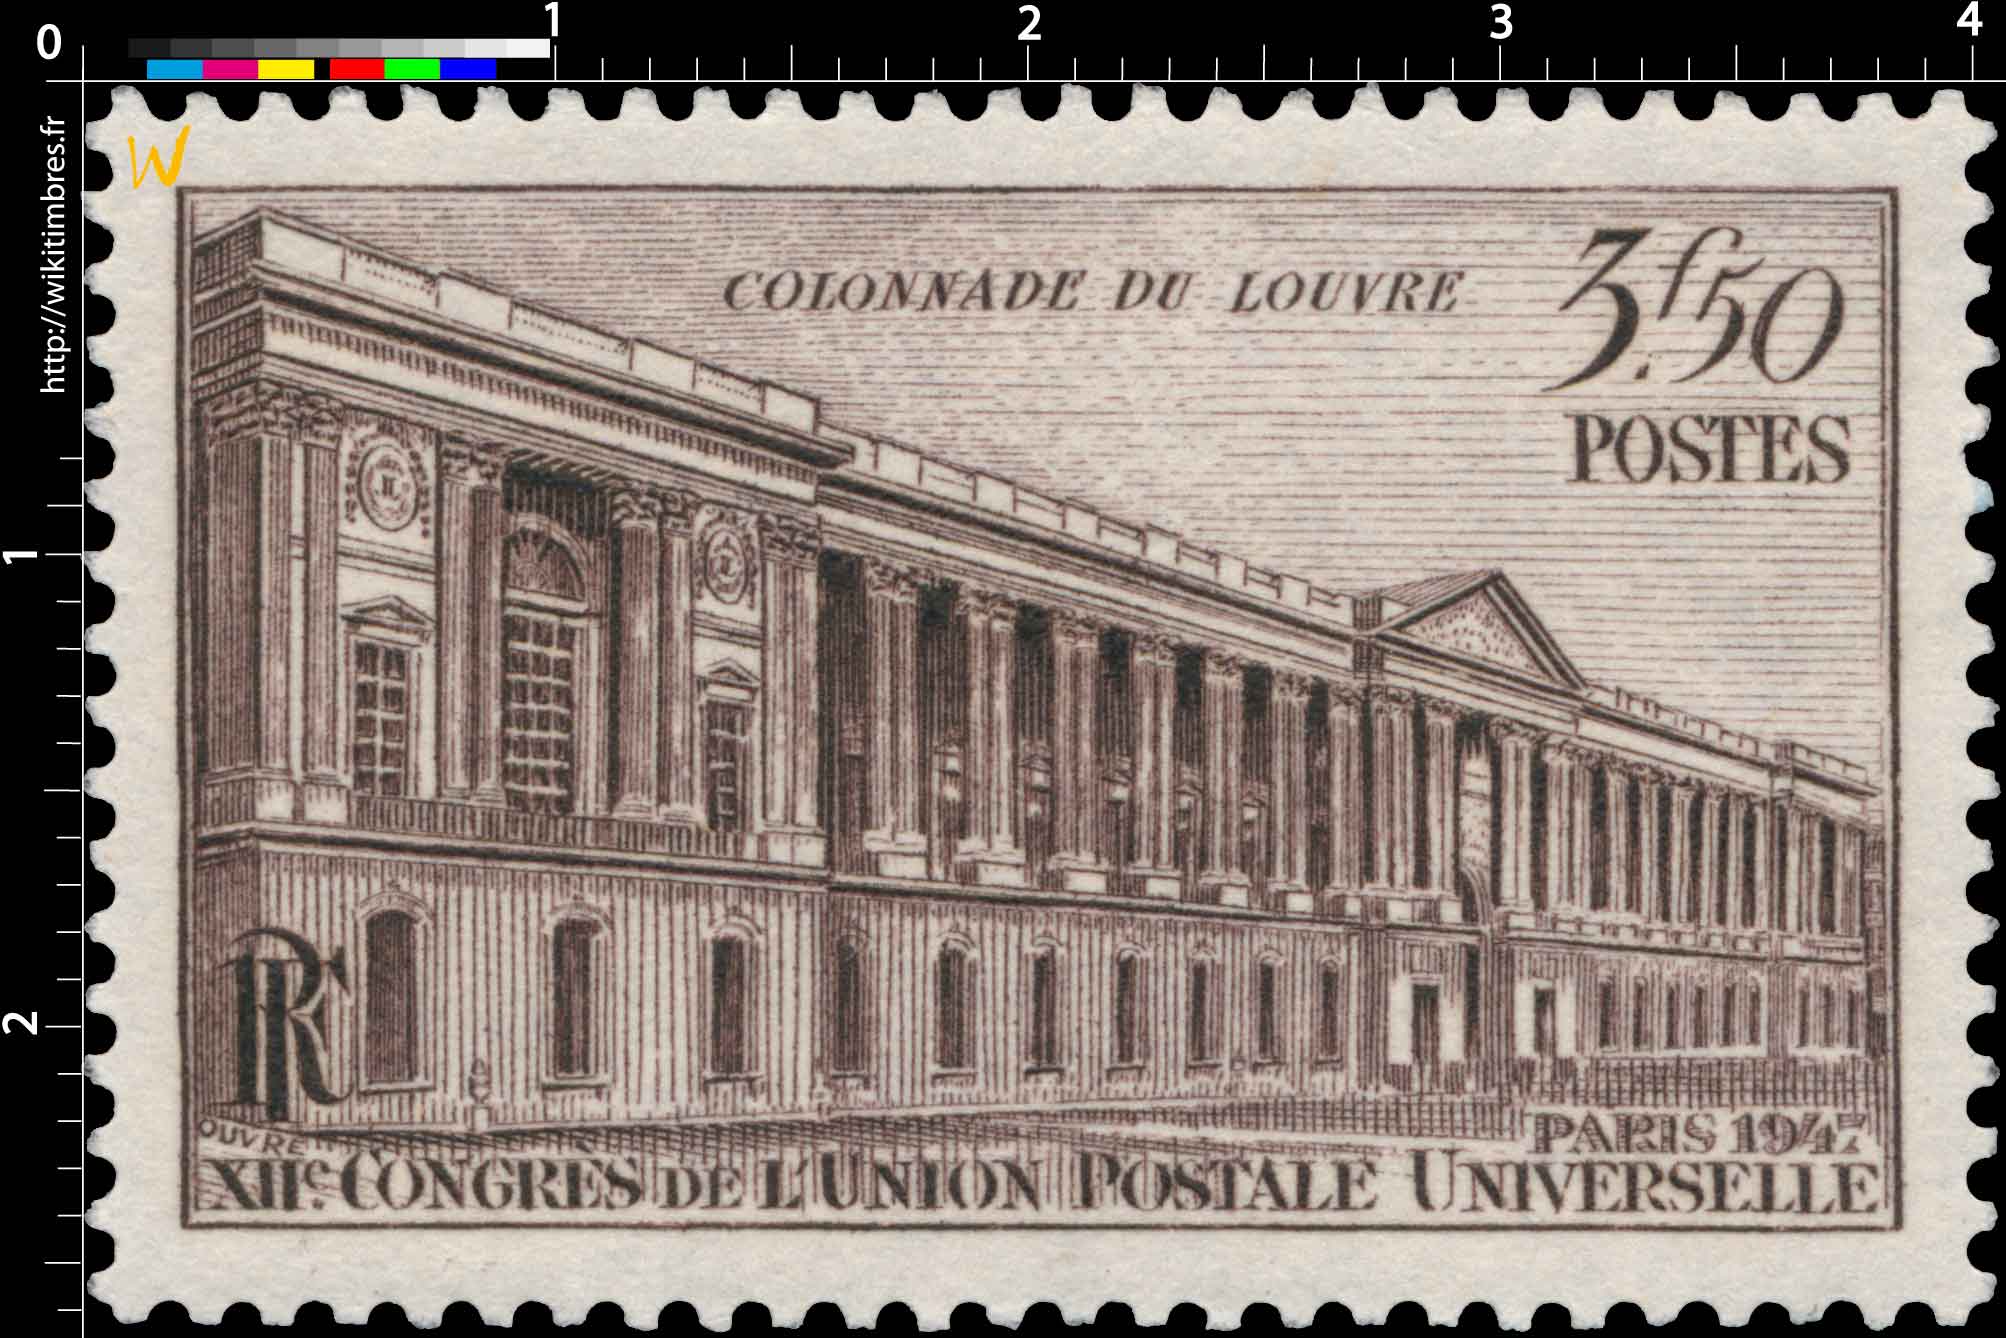 COLONNADE DU LOUVRE PARIS 1947 XIIe CONGRÈS DE L'UNION POSTALE UNIVERSELLE